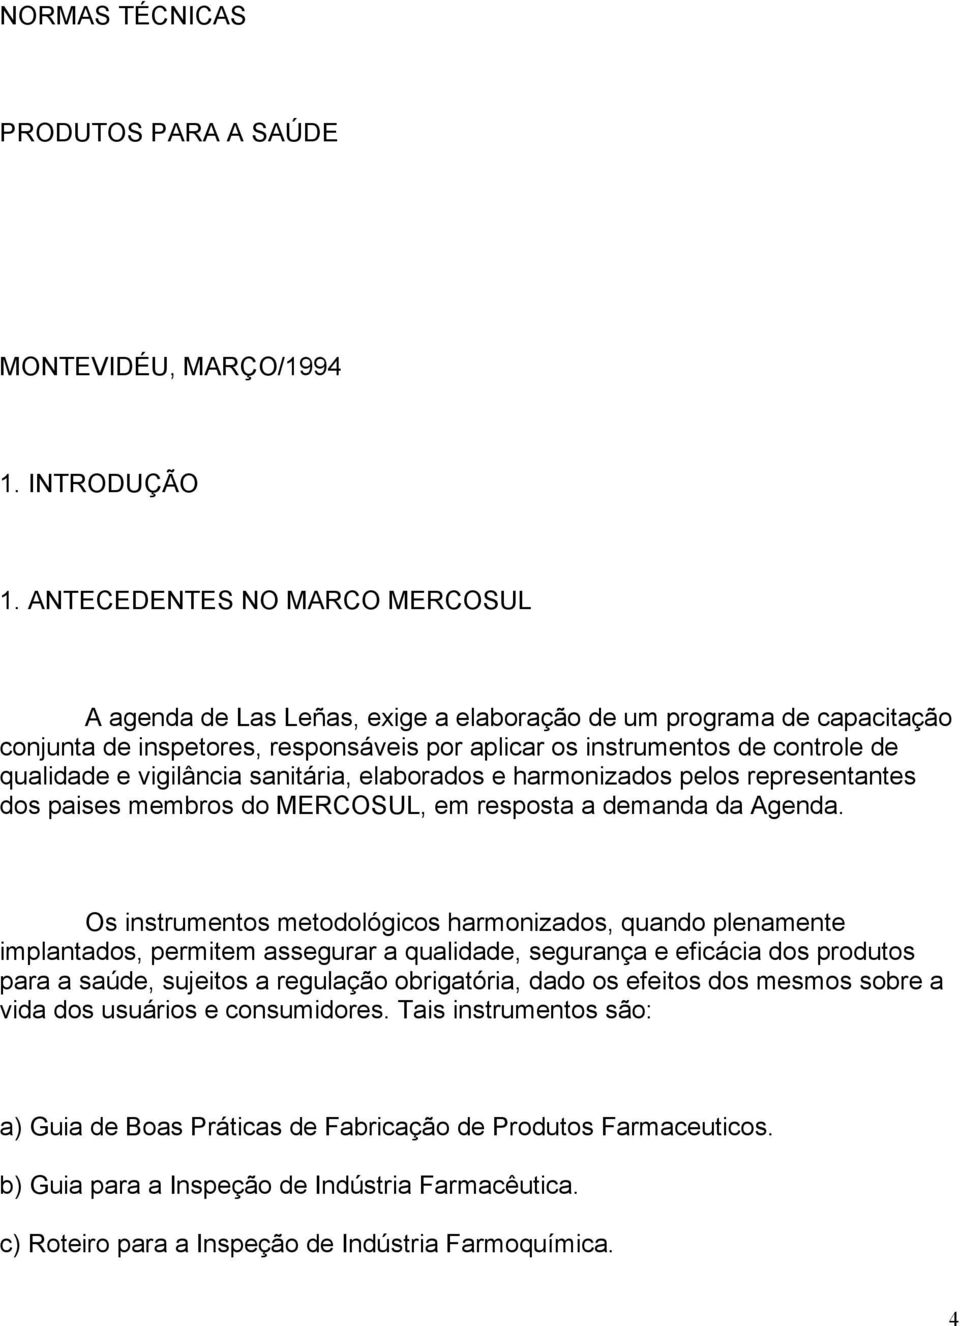 vigilância sanitária, elaborados e harmonizados pelos representantes dos paises membros do MERCOSUL, em resposta a demanda da Agenda.